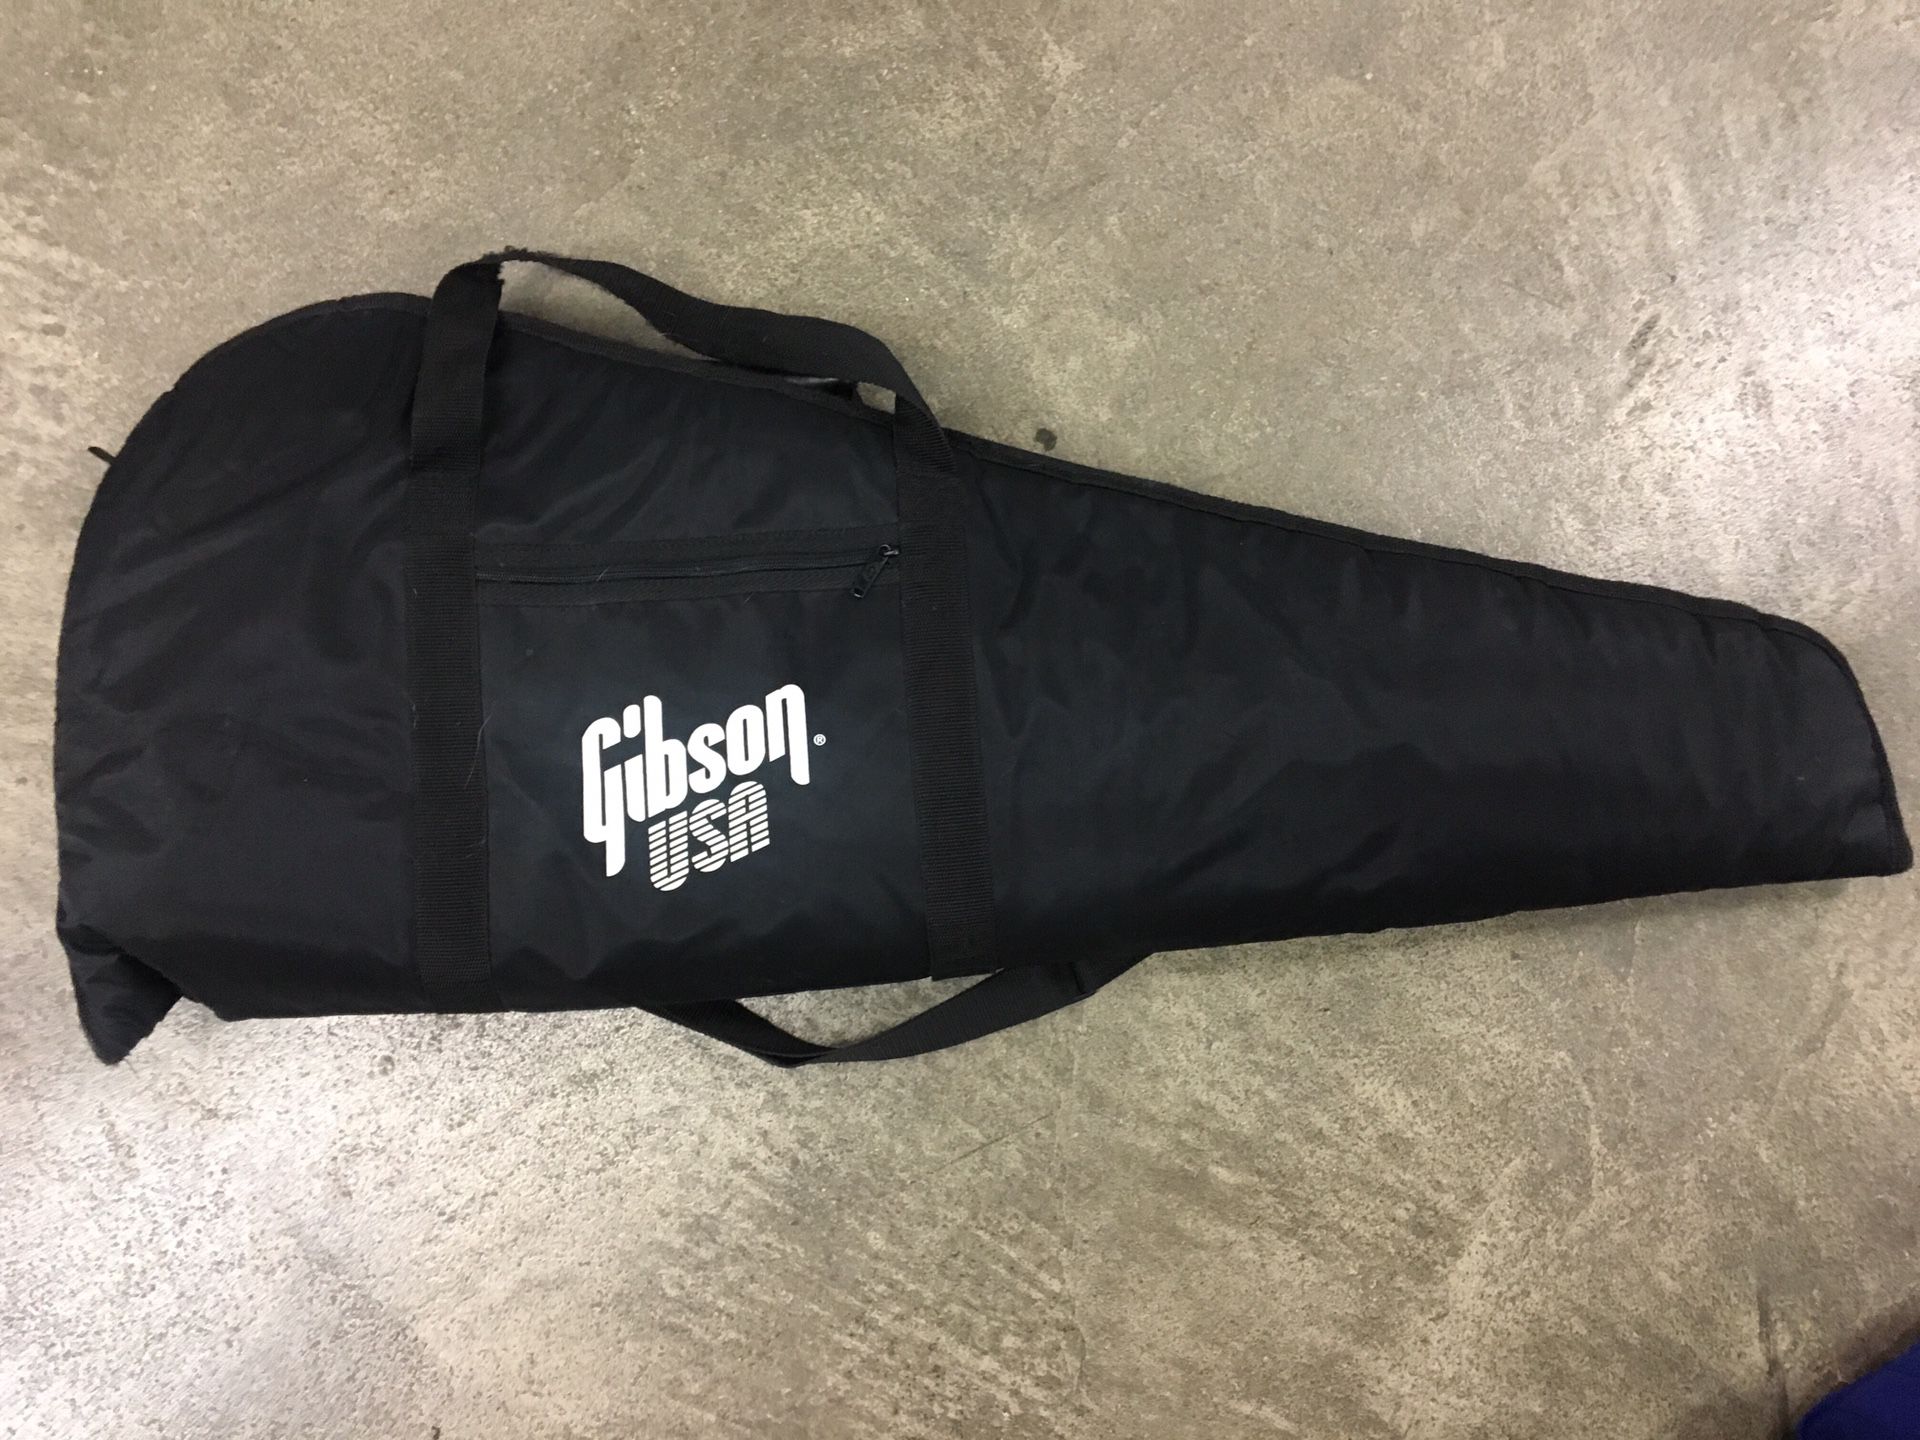 Gibson padded gig bag